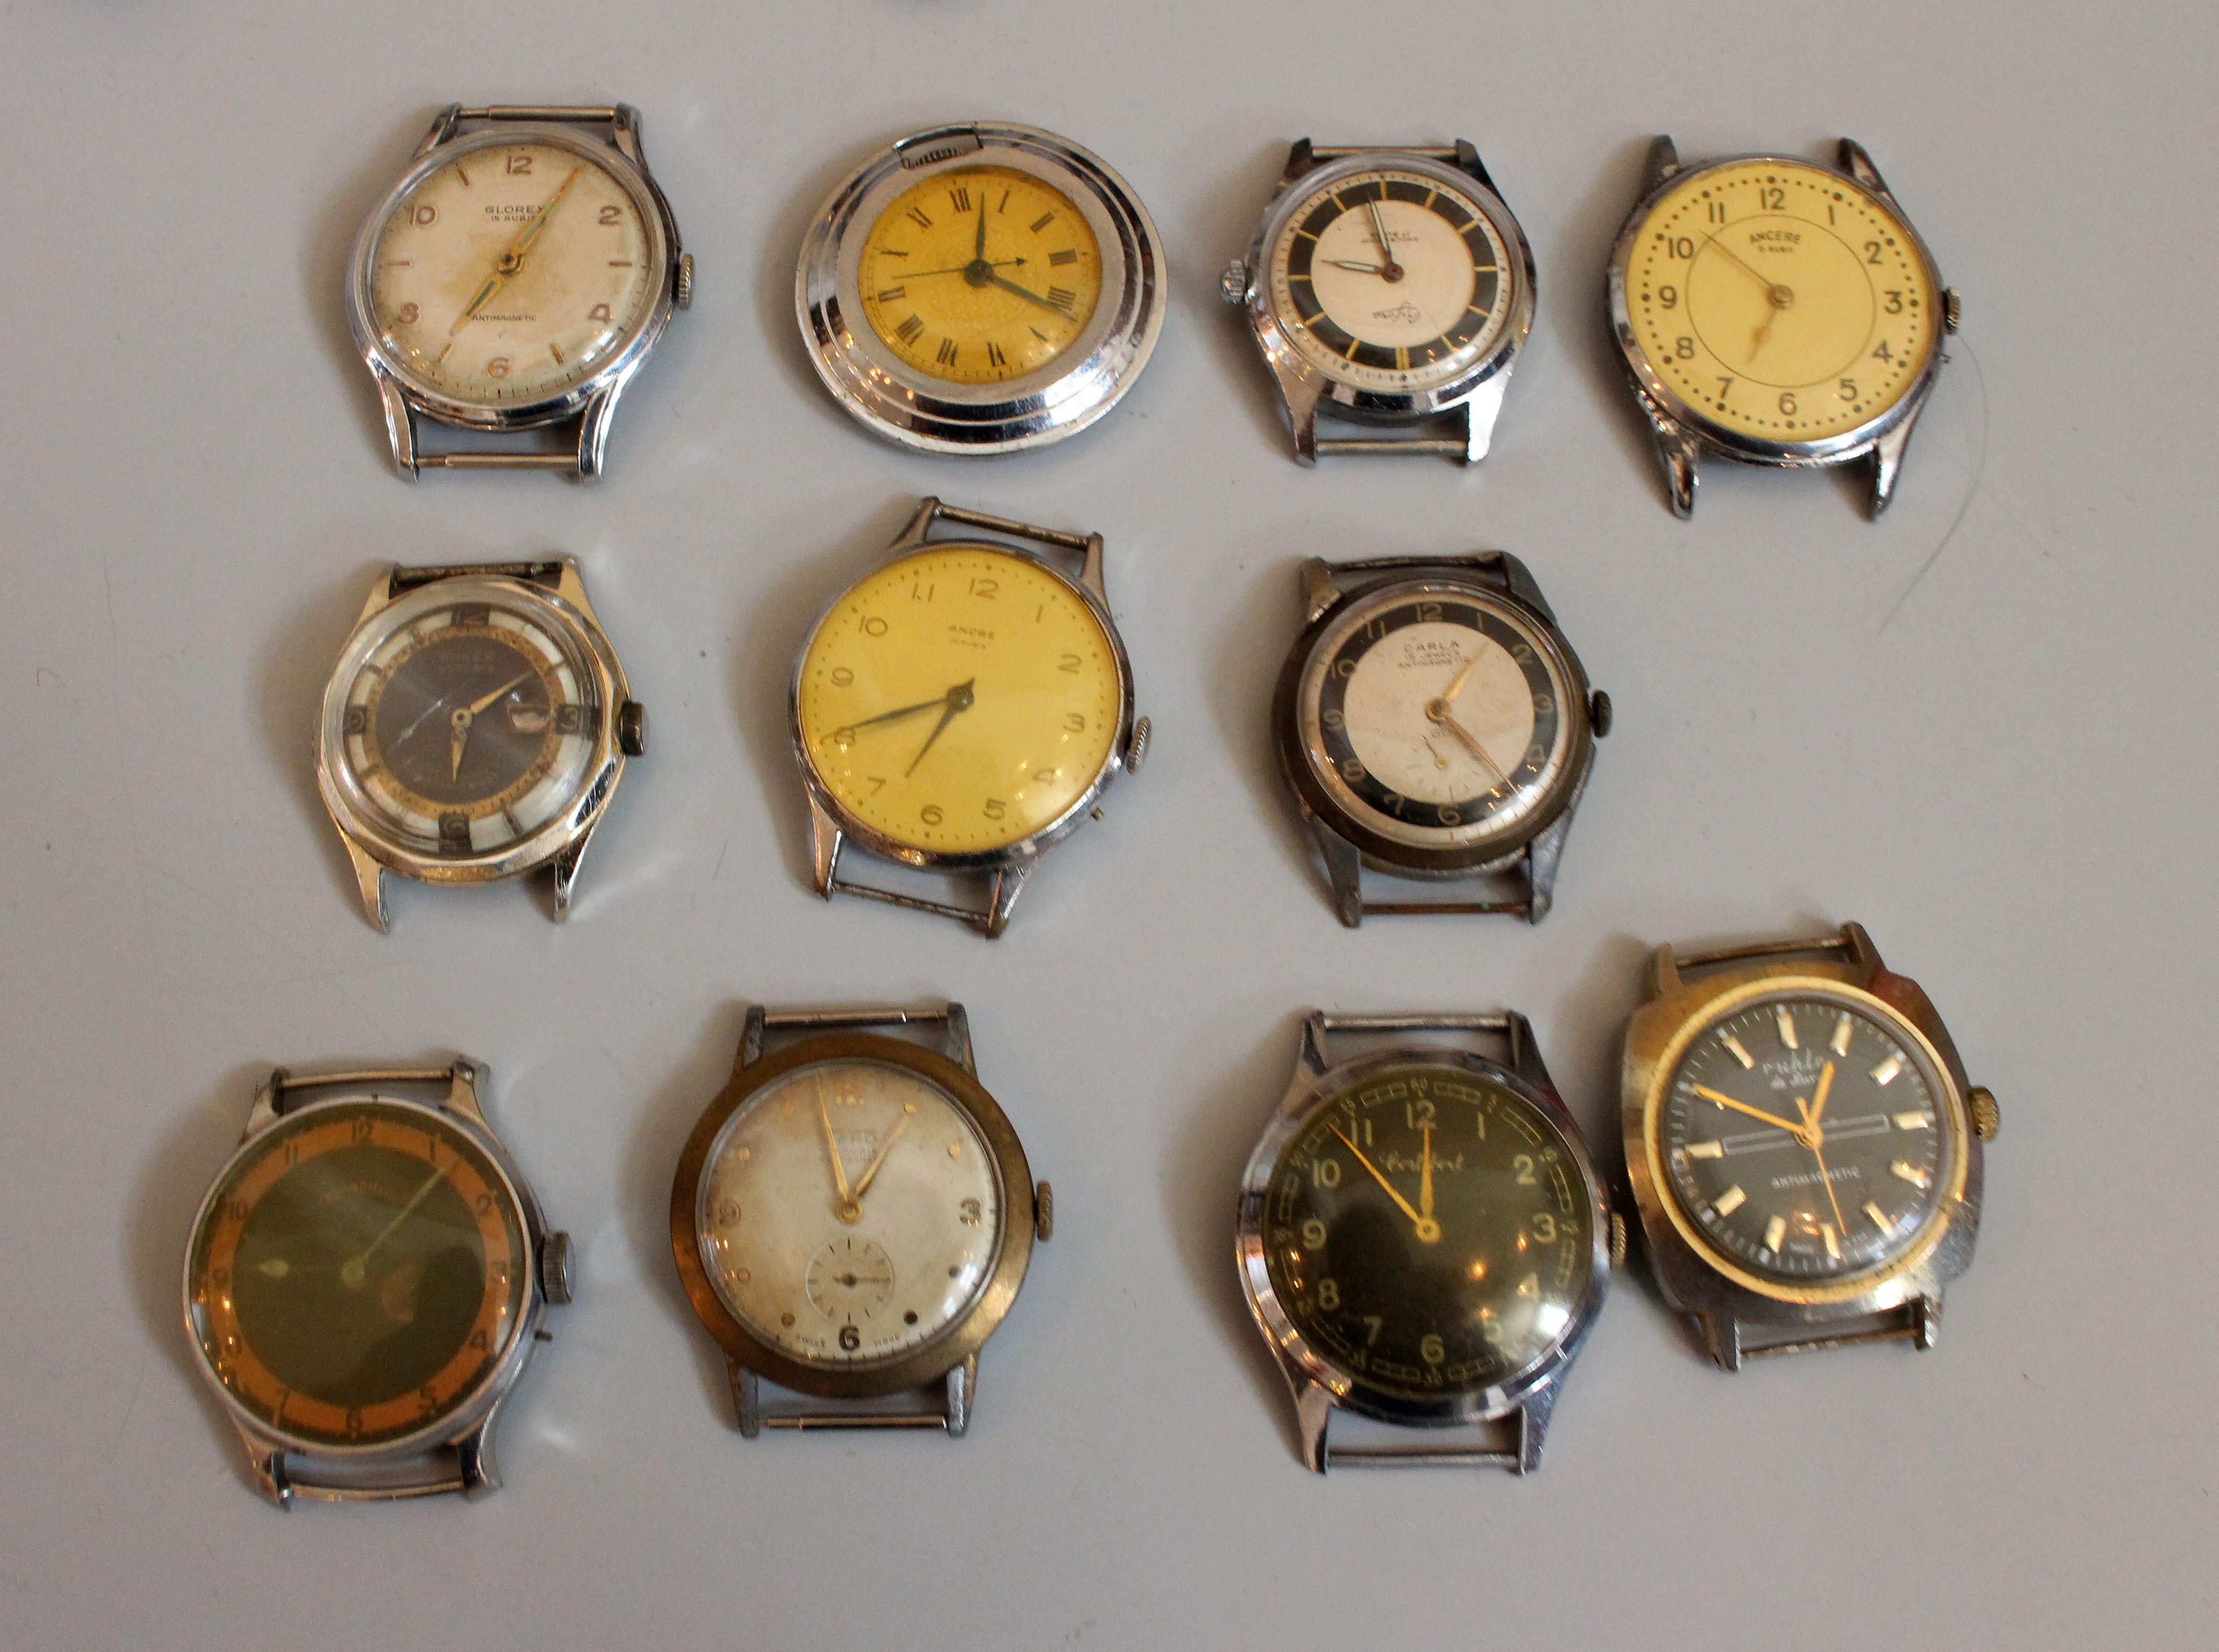 Collection de montres-bracelets vintage et anciennes. Total 22 montres . Ils sont tous dans leur état d'origine. 
Le cuir se plie. Les montres sont fonctionnelles mais nécessitent un nettoyage du mouvement, ce qui est une procédure normale pour les